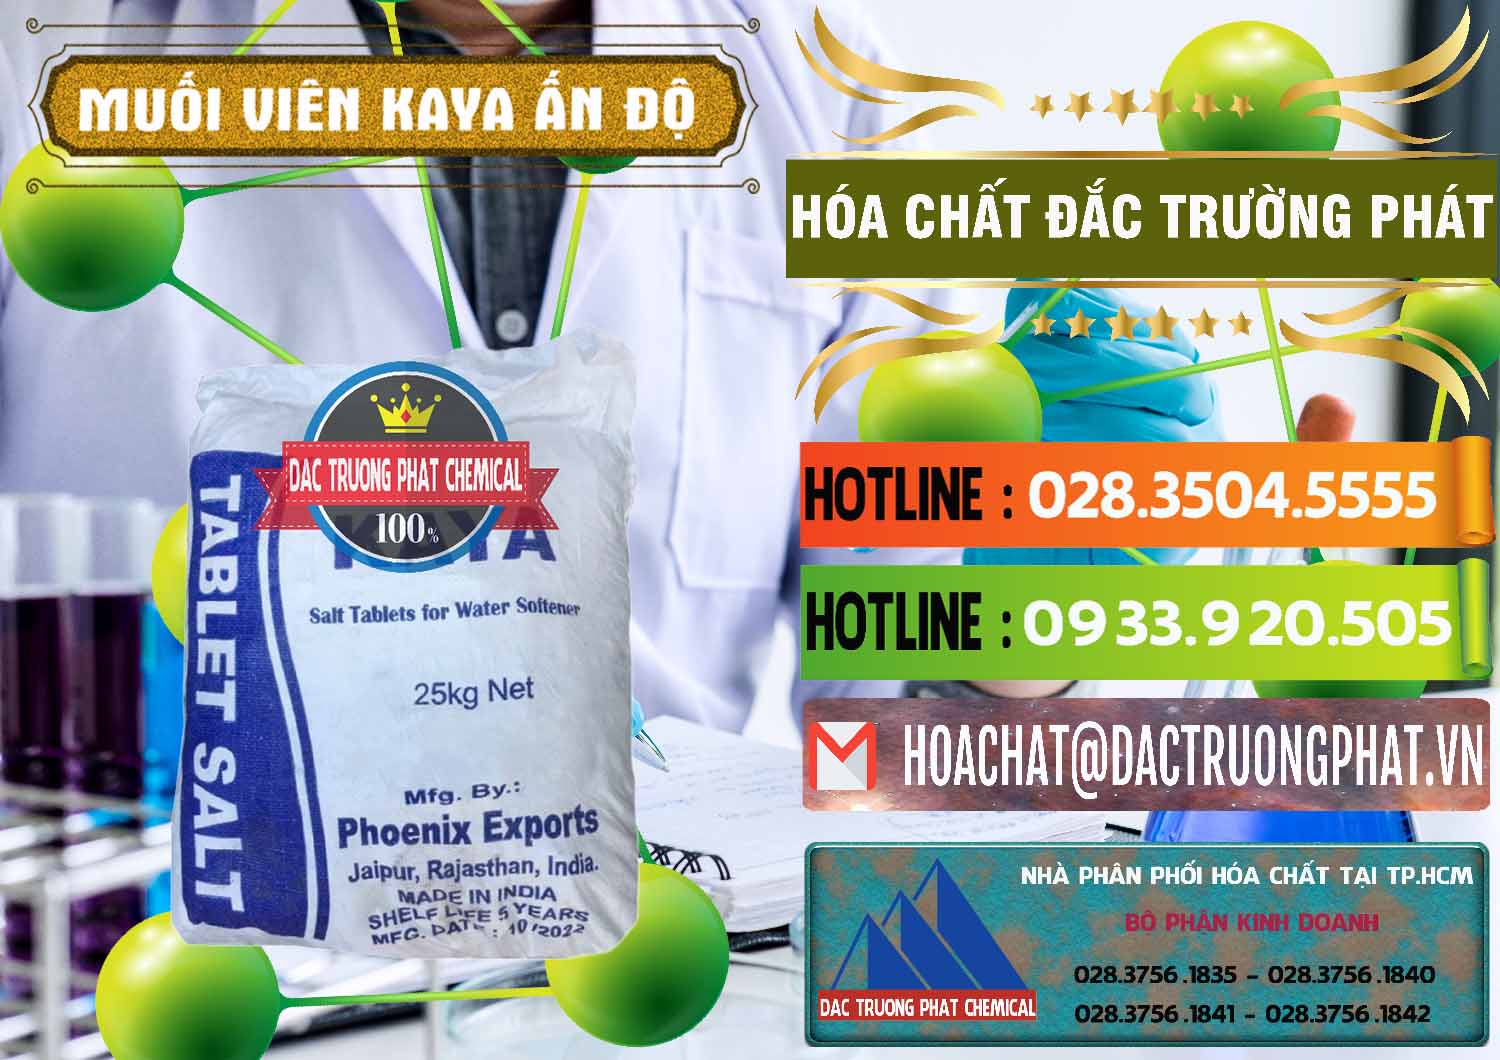 Đơn vị chuyên bán ( cung ứng ) Muối NaCL – Sodium Chloride Dạng Viên Tablets Kaya Ấn Độ India - 0368 - Nơi chuyên bán & cung cấp hóa chất tại TP.HCM - cungcaphoachat.com.vn